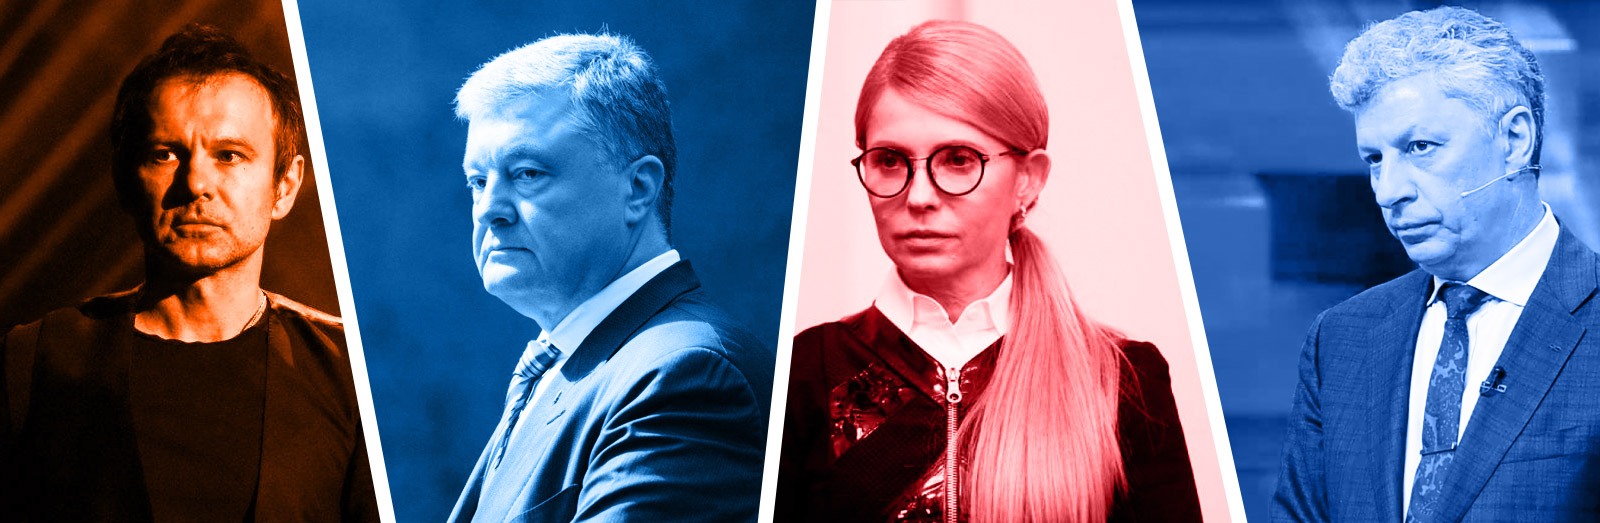 В ожидании падения. Почему Порошенко, Тимошенко и Вакарчук не критикуют Зеленского